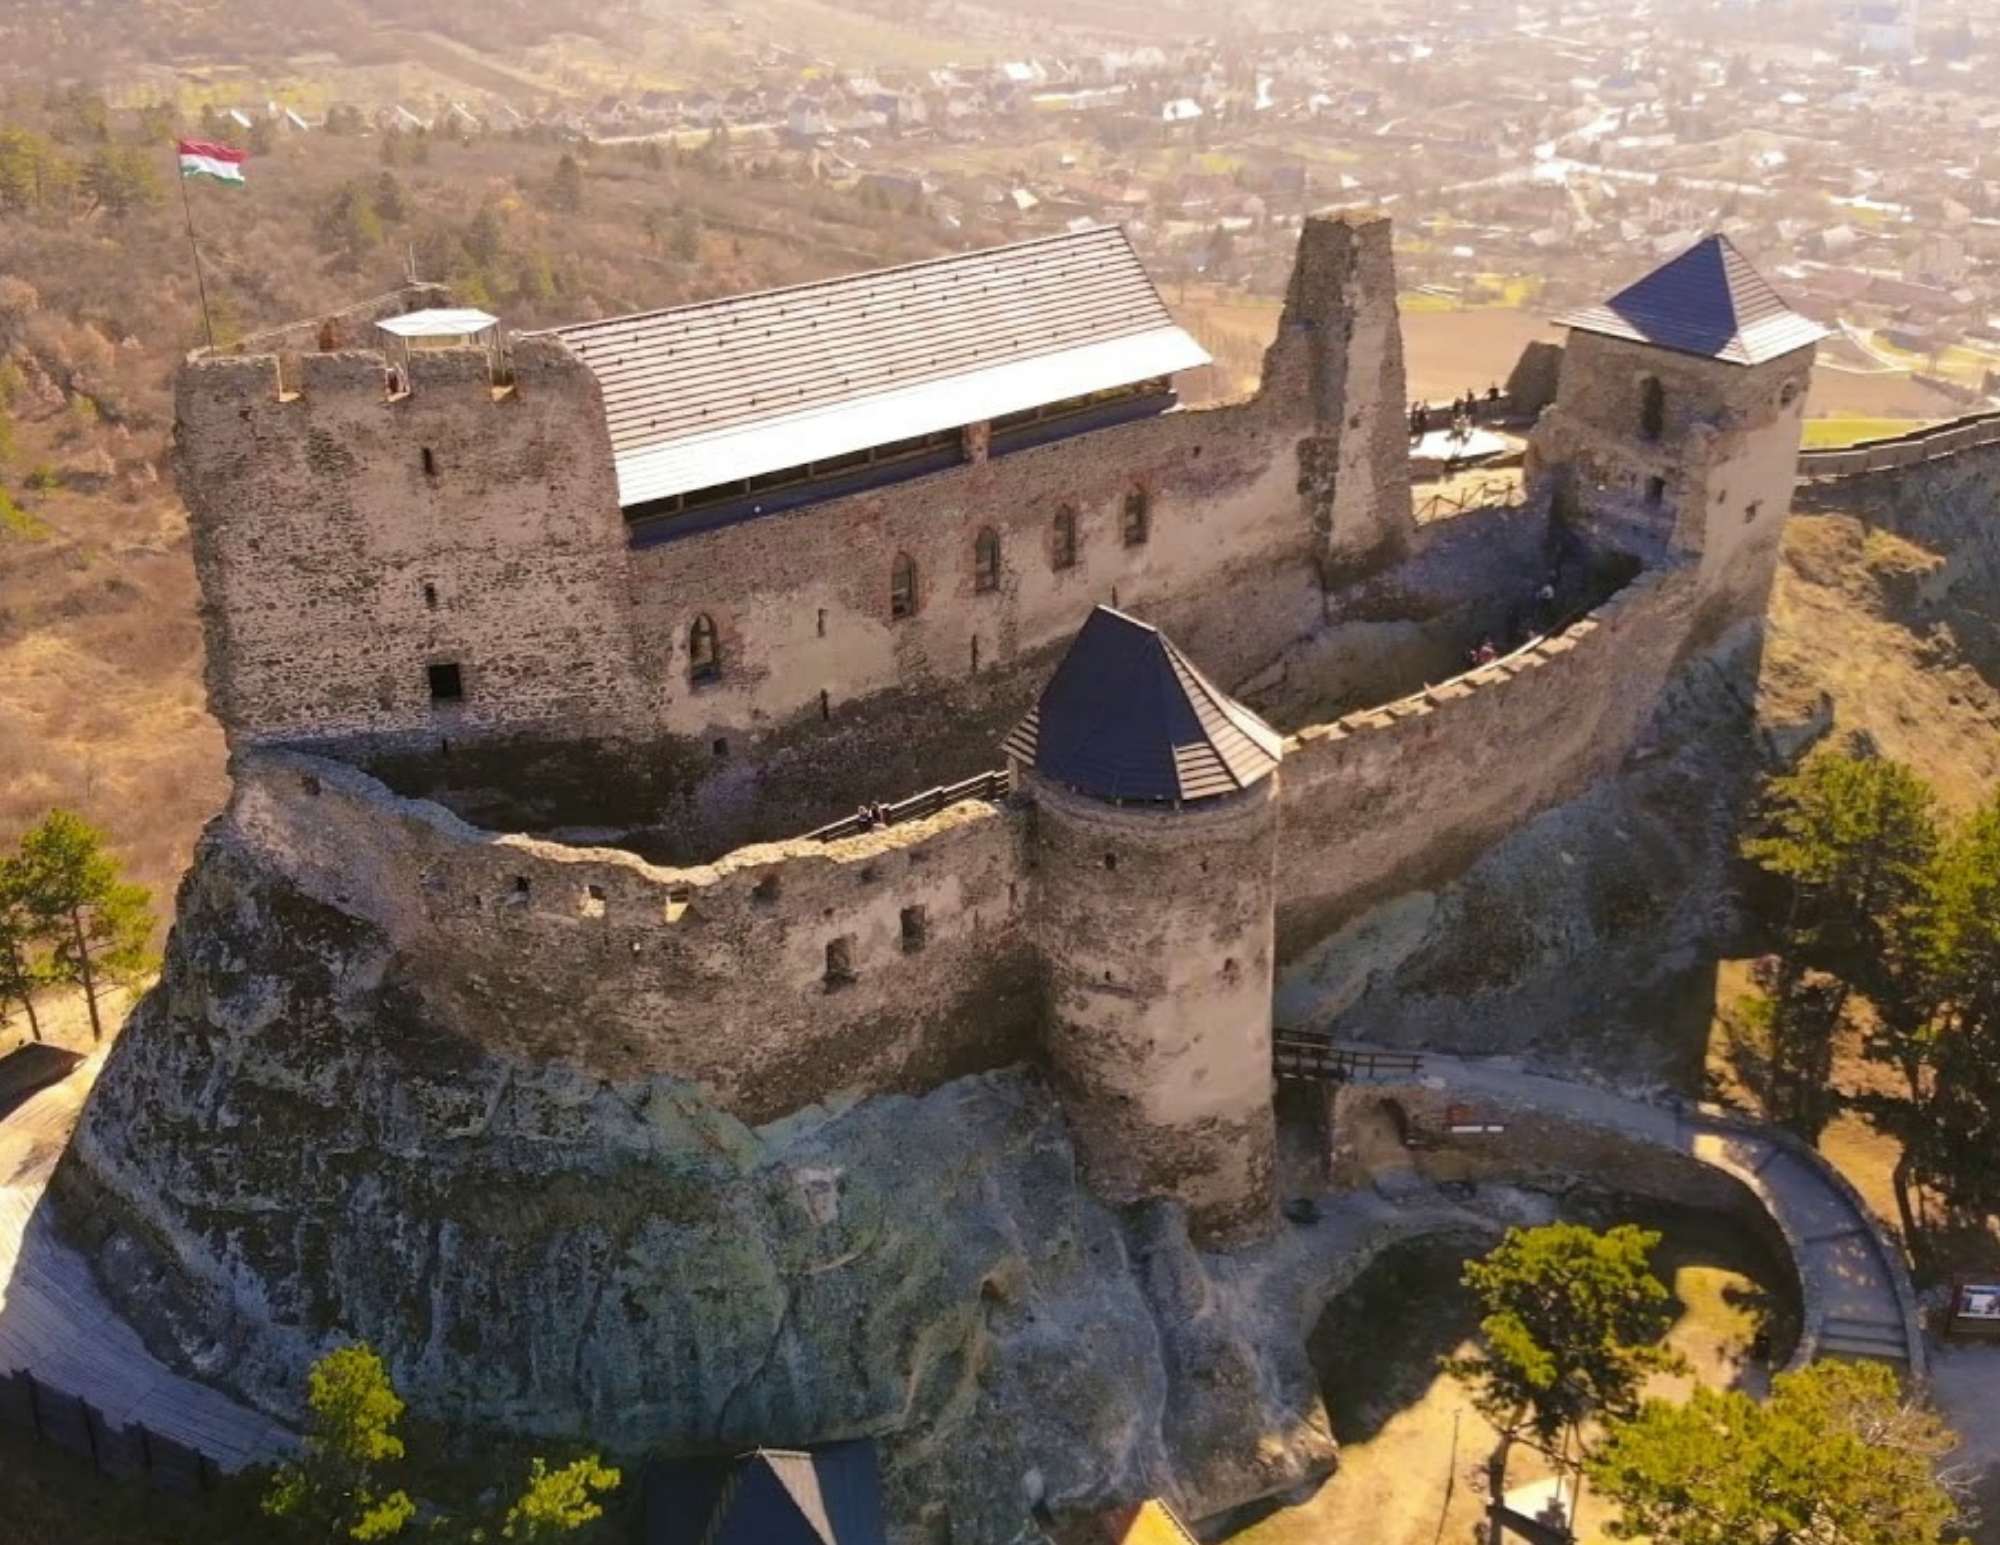 Hai sentito parlare delle misteriose leggende di queste fortezze ungheresi